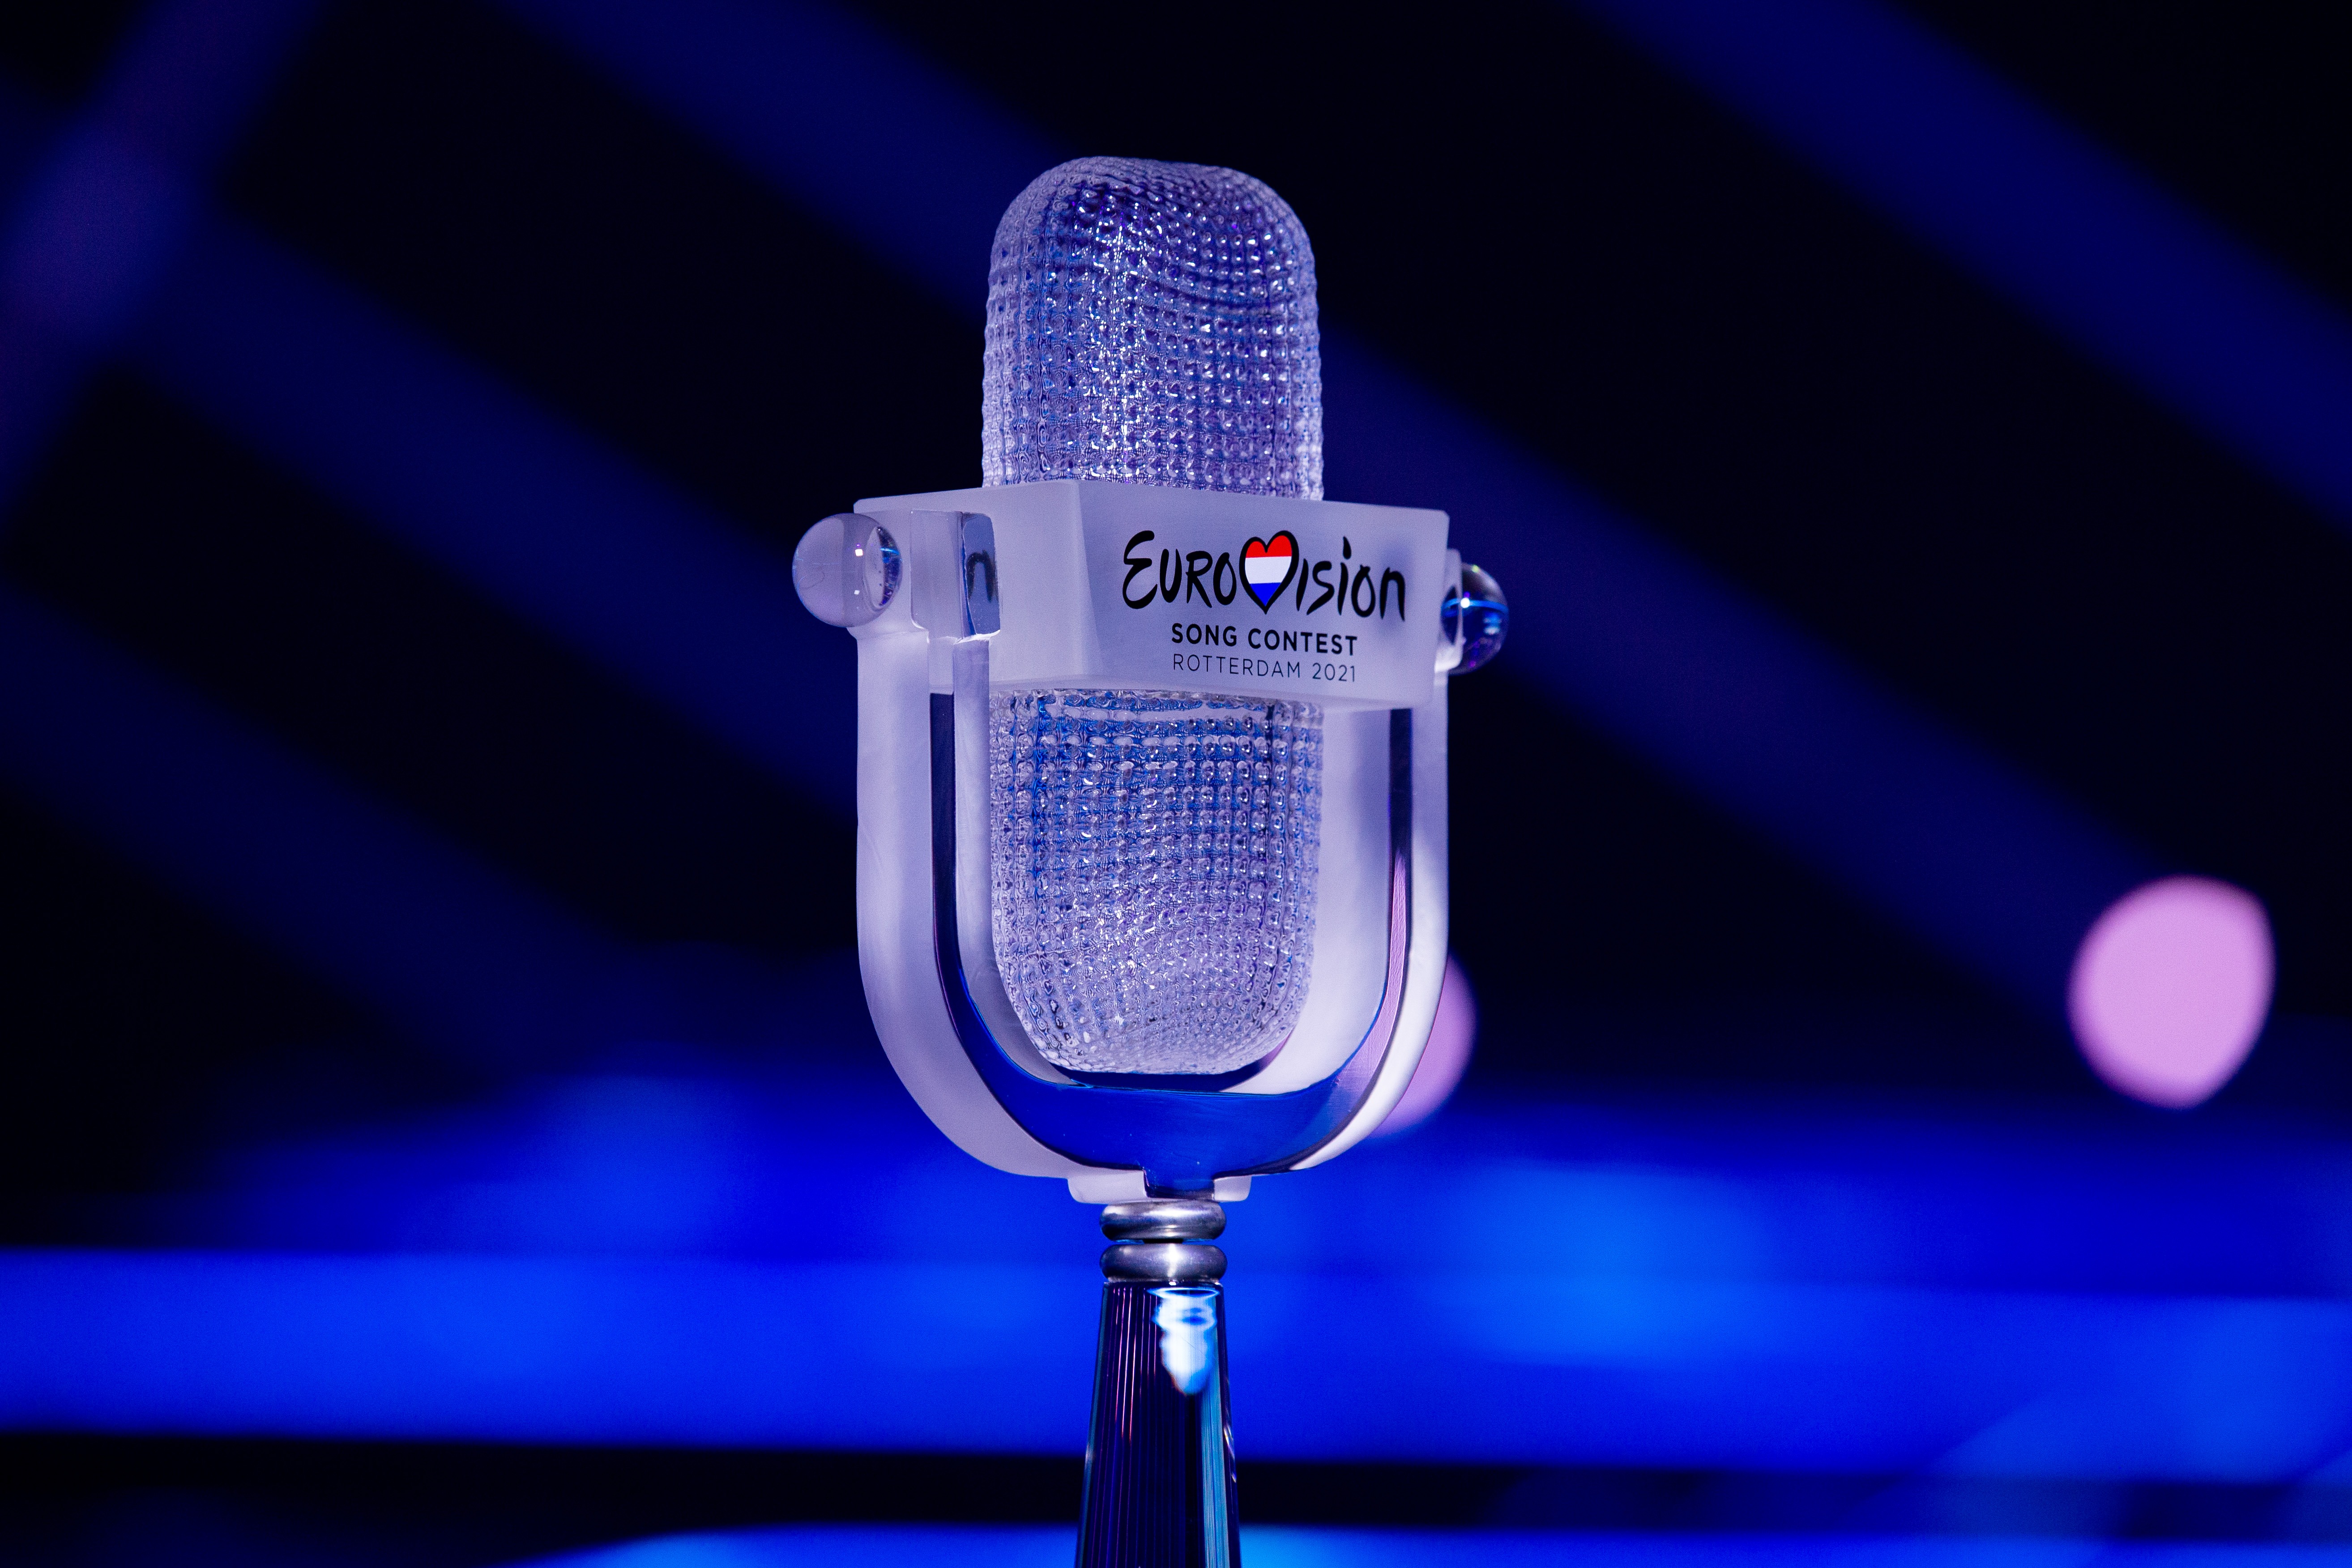 A 2021-es Eurovíziós Dalfesztivál kristálymikrofon trófeája a Rotterdam Ahoy színpadán - Stijn Smulders (EBU) fotója